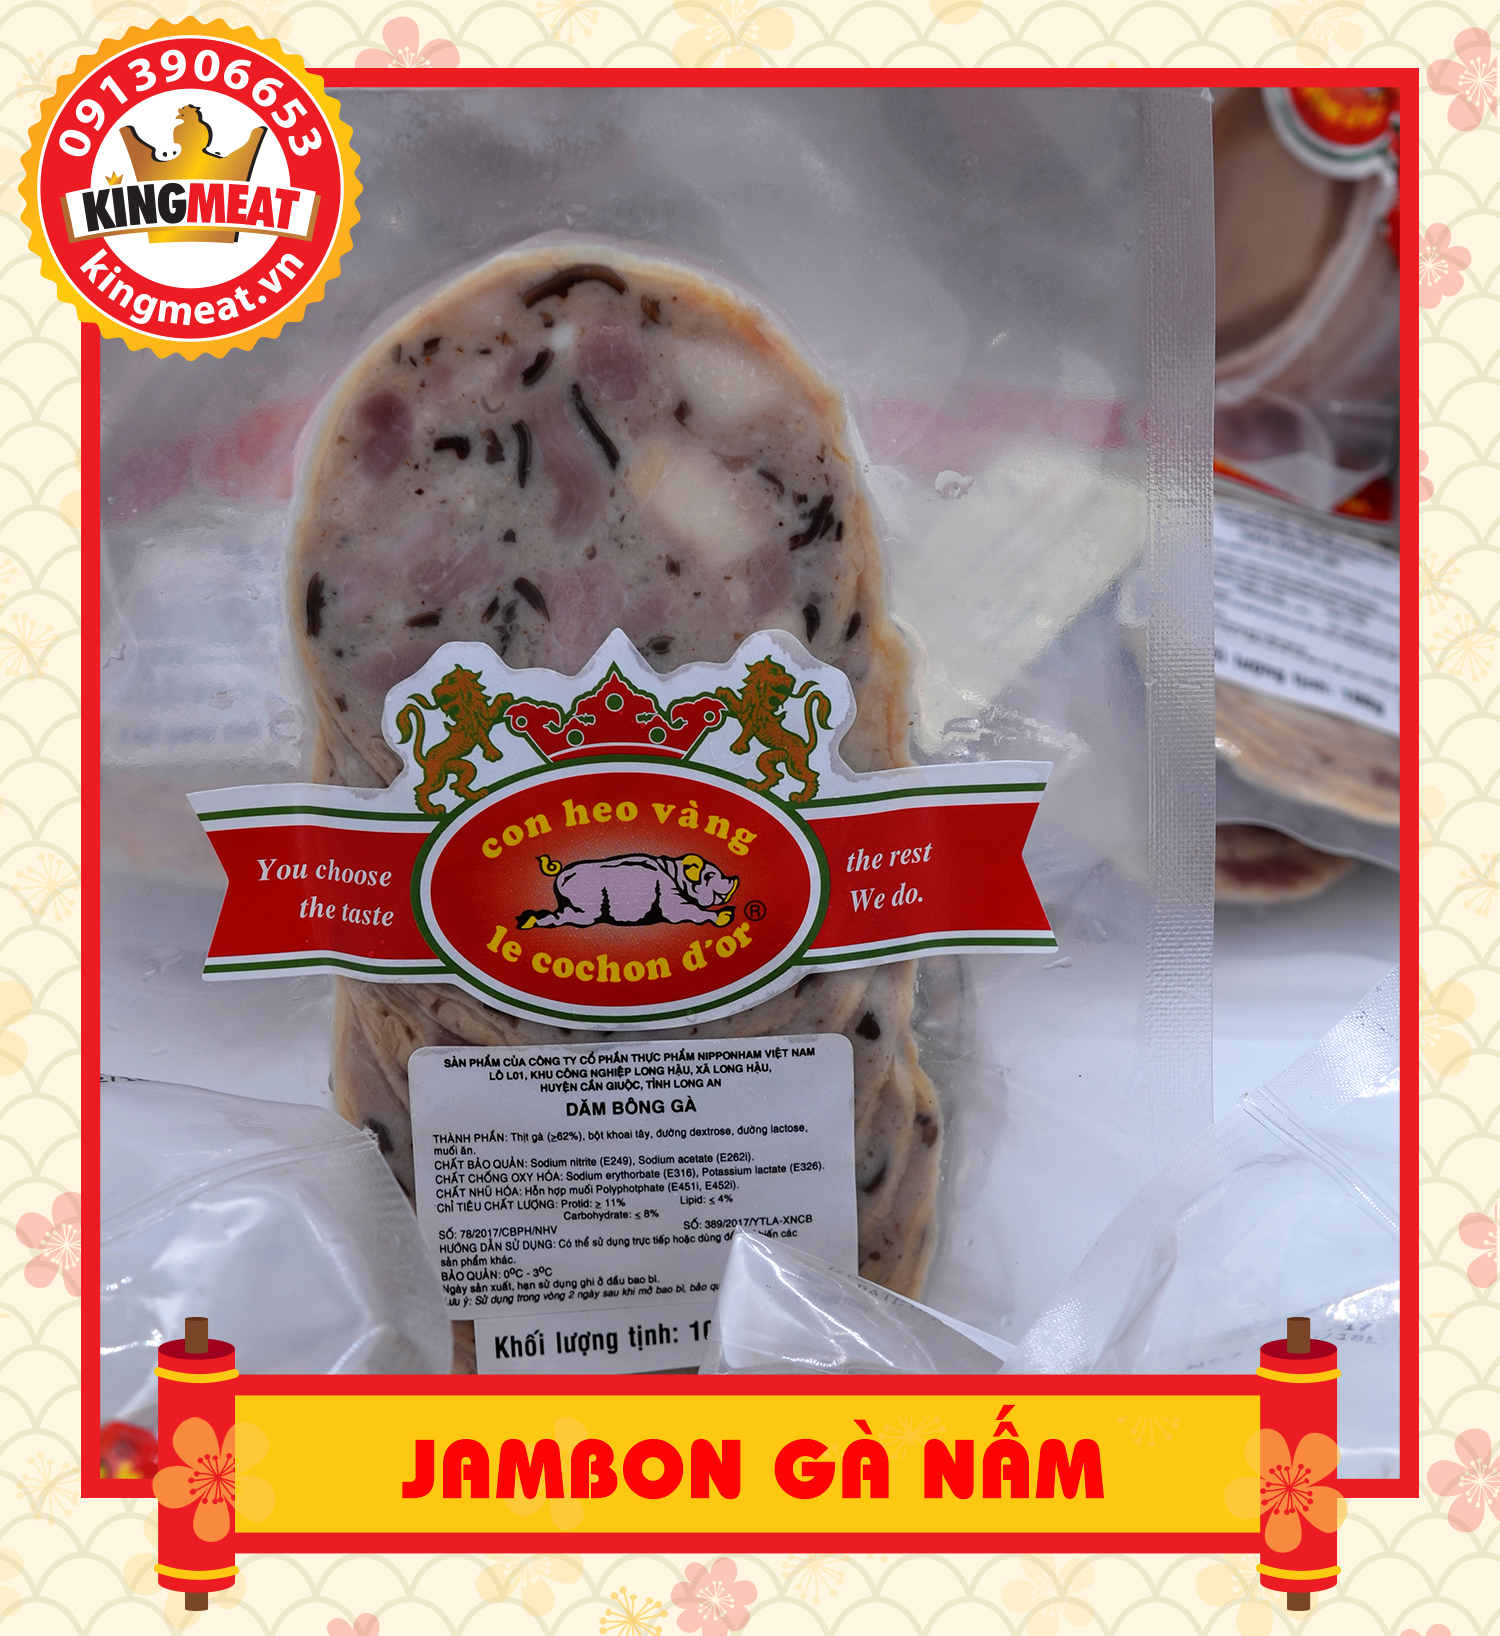 Jambon-ga-nam-06